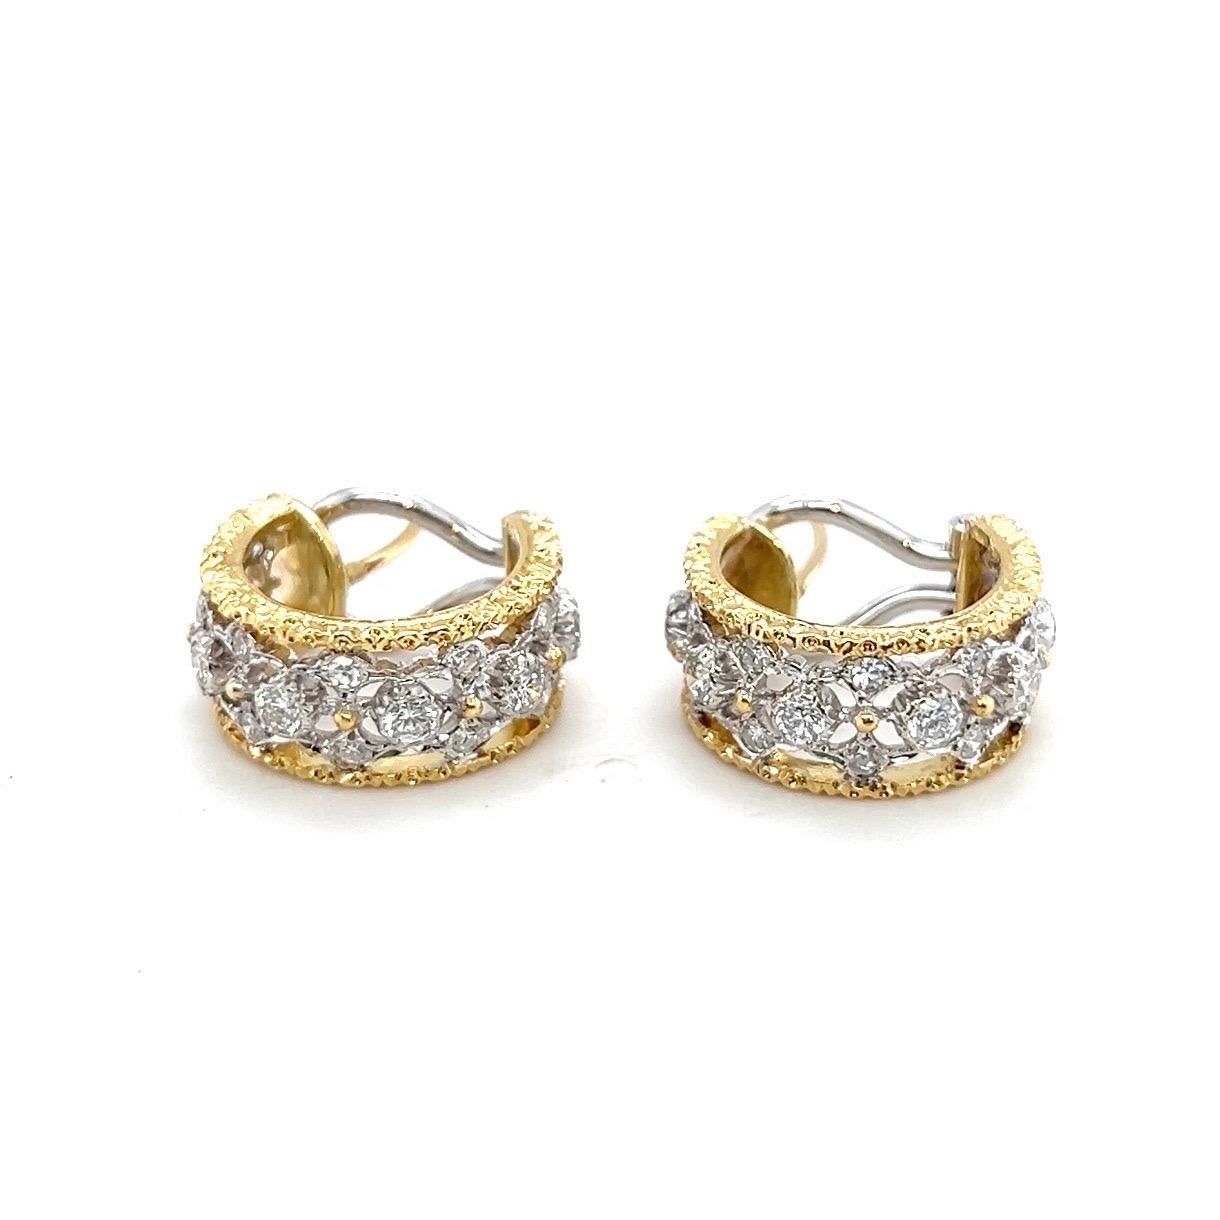 Elegante und feminine Ohrringe aus 18 Karat Gold und Diamanten des italienischen Juweliers Mario Buccellati.

Filigrane, zweifarbige Ohrringe aus 18 Karat Weiß- und Gelbgold. Die durchbrochene Vorderseite ist mit Brillanten und Diamanten im